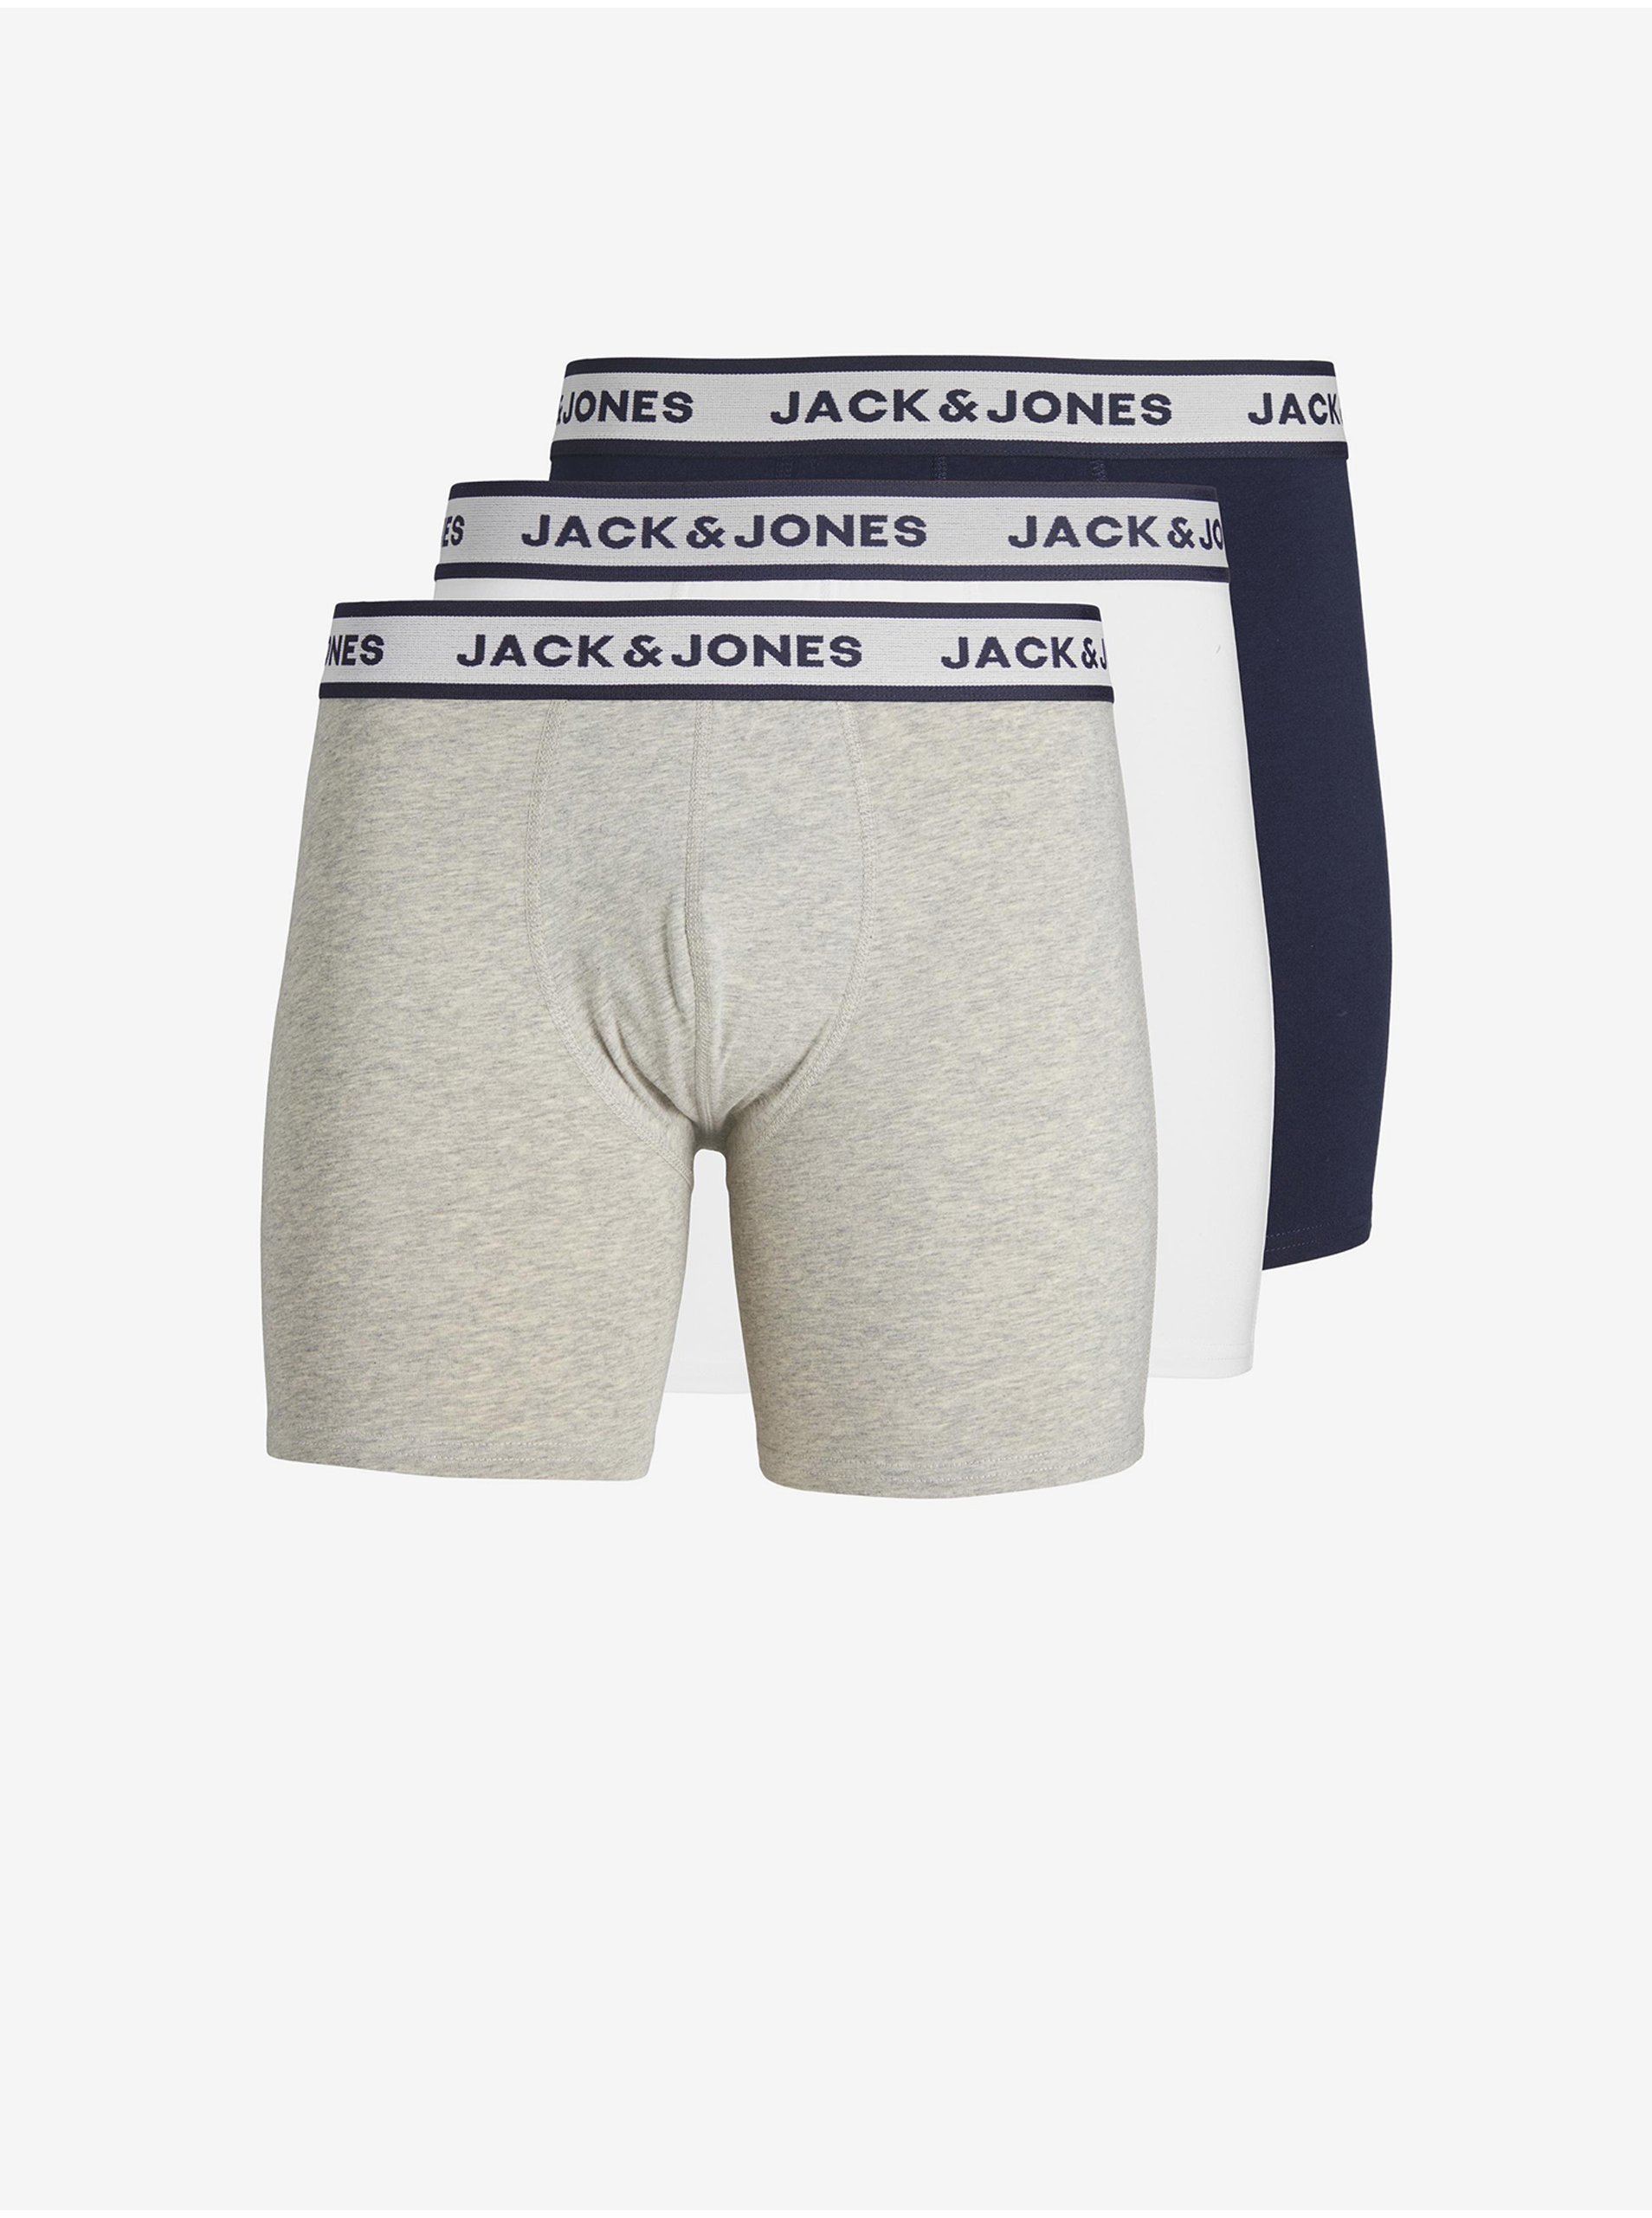 E-shop Súprava troch pánskych boxeriek vo svetlo šedej, bielej a tmavo modrej farbe Jack & Jones Solid